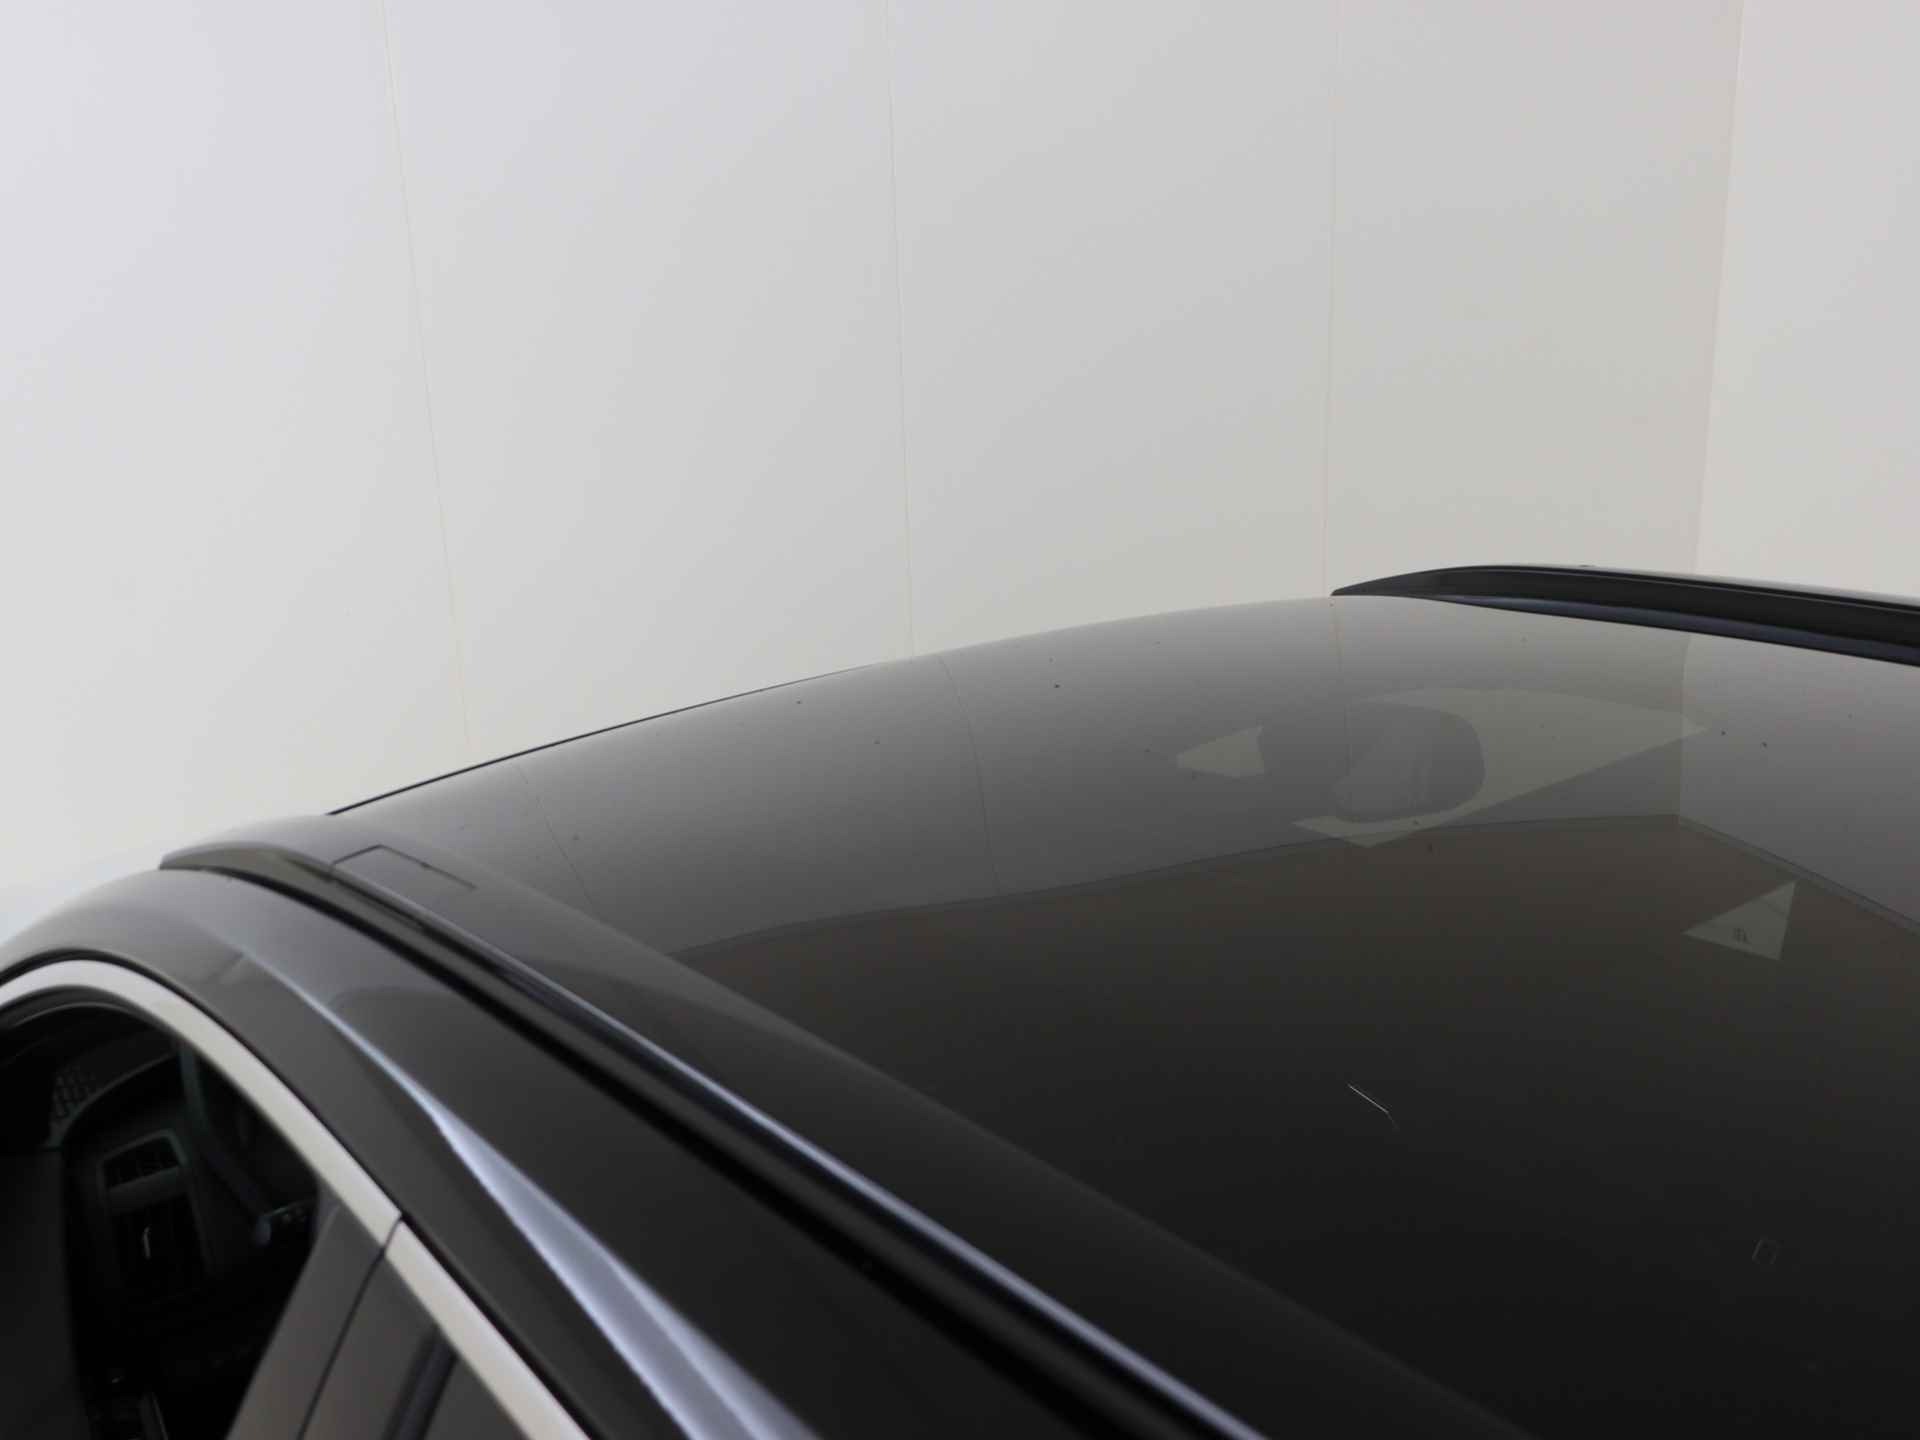 Toyota Bz4x Launch Edition Premium Bi-Tone uitvoering | Navigatie | Stoel&stuur verwarming | My T app | Panoramadak | Wegenbelasting vrij | Subsidie €2000,- aanvraag mogelijk. - 43/48